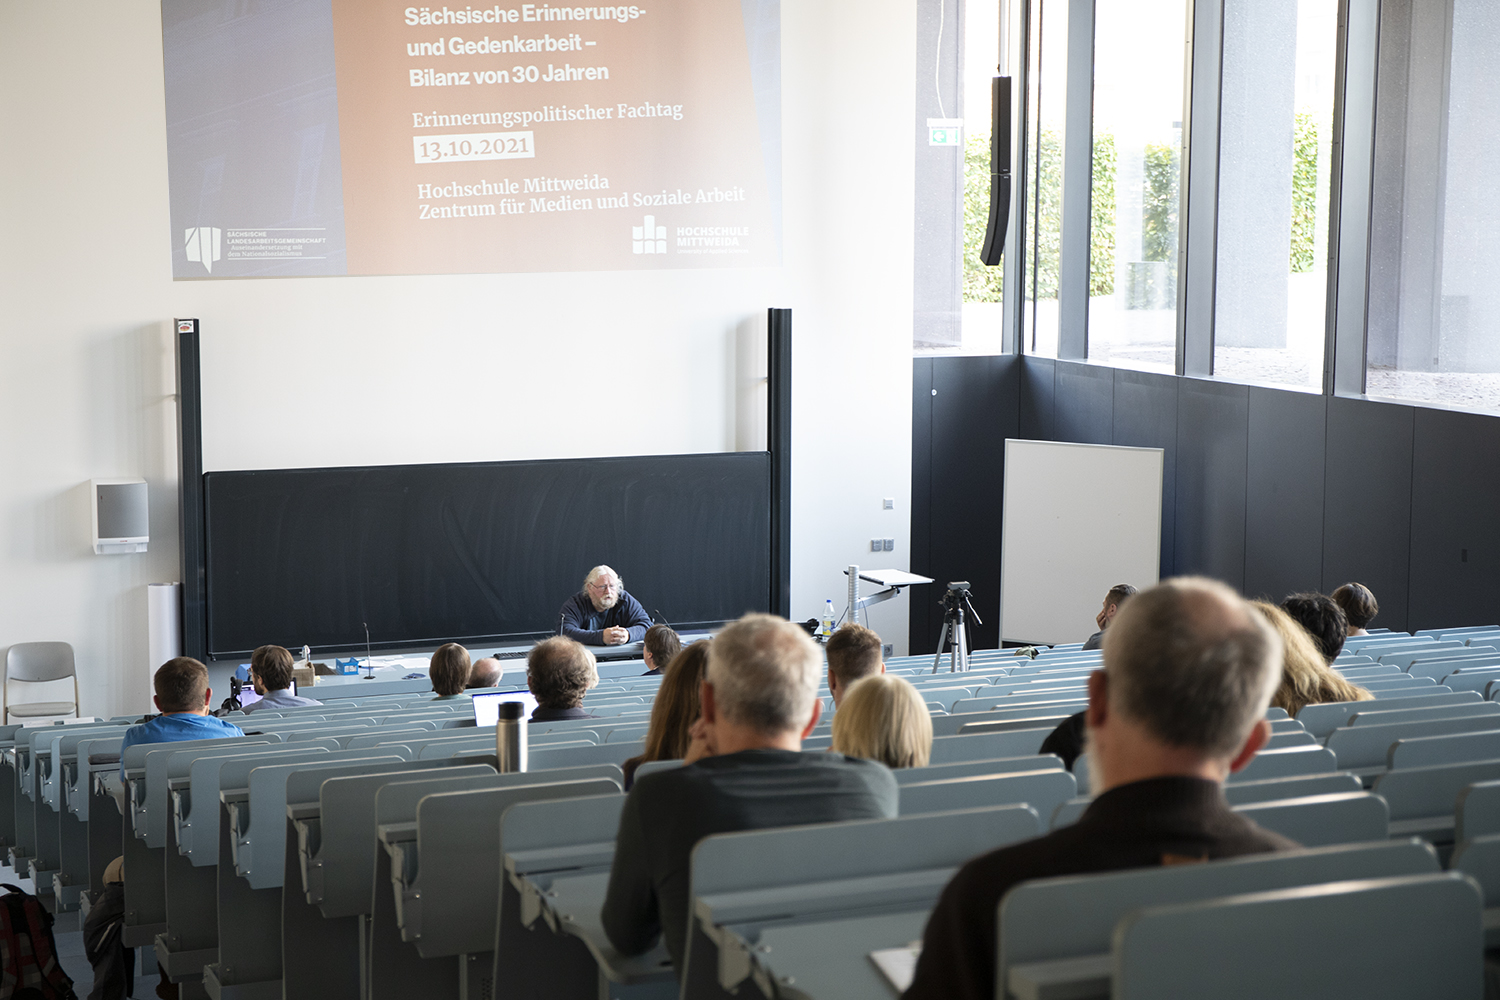 Erinnerungspolitischer Fachtag, 13.10.2021, Hochschule Mittweida, Eröffnungsvortrag Uwe Hirschfeld (Foto: Franziska Frenzel)